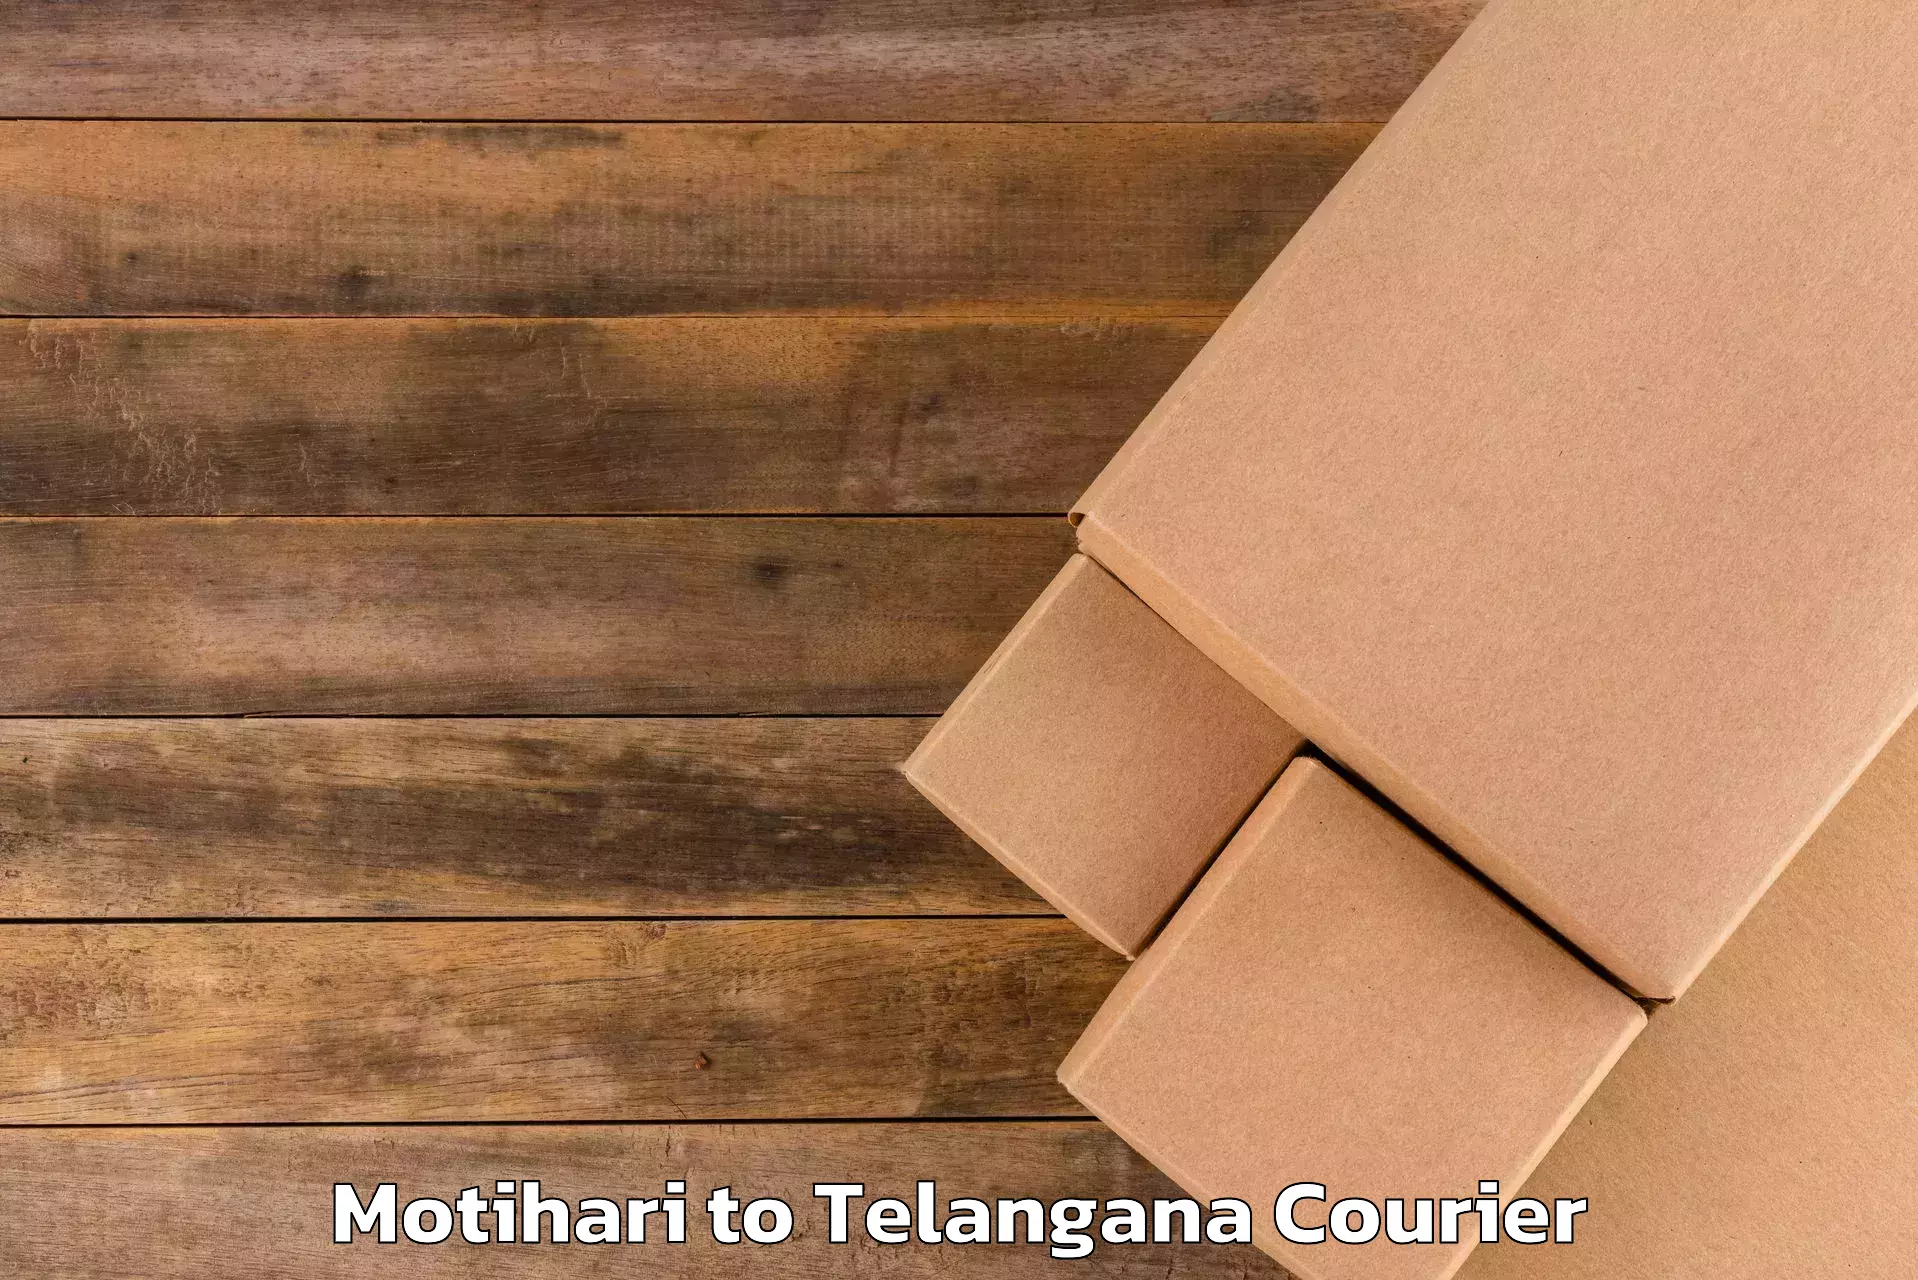 Direct baggage courier Motihari to Warangal